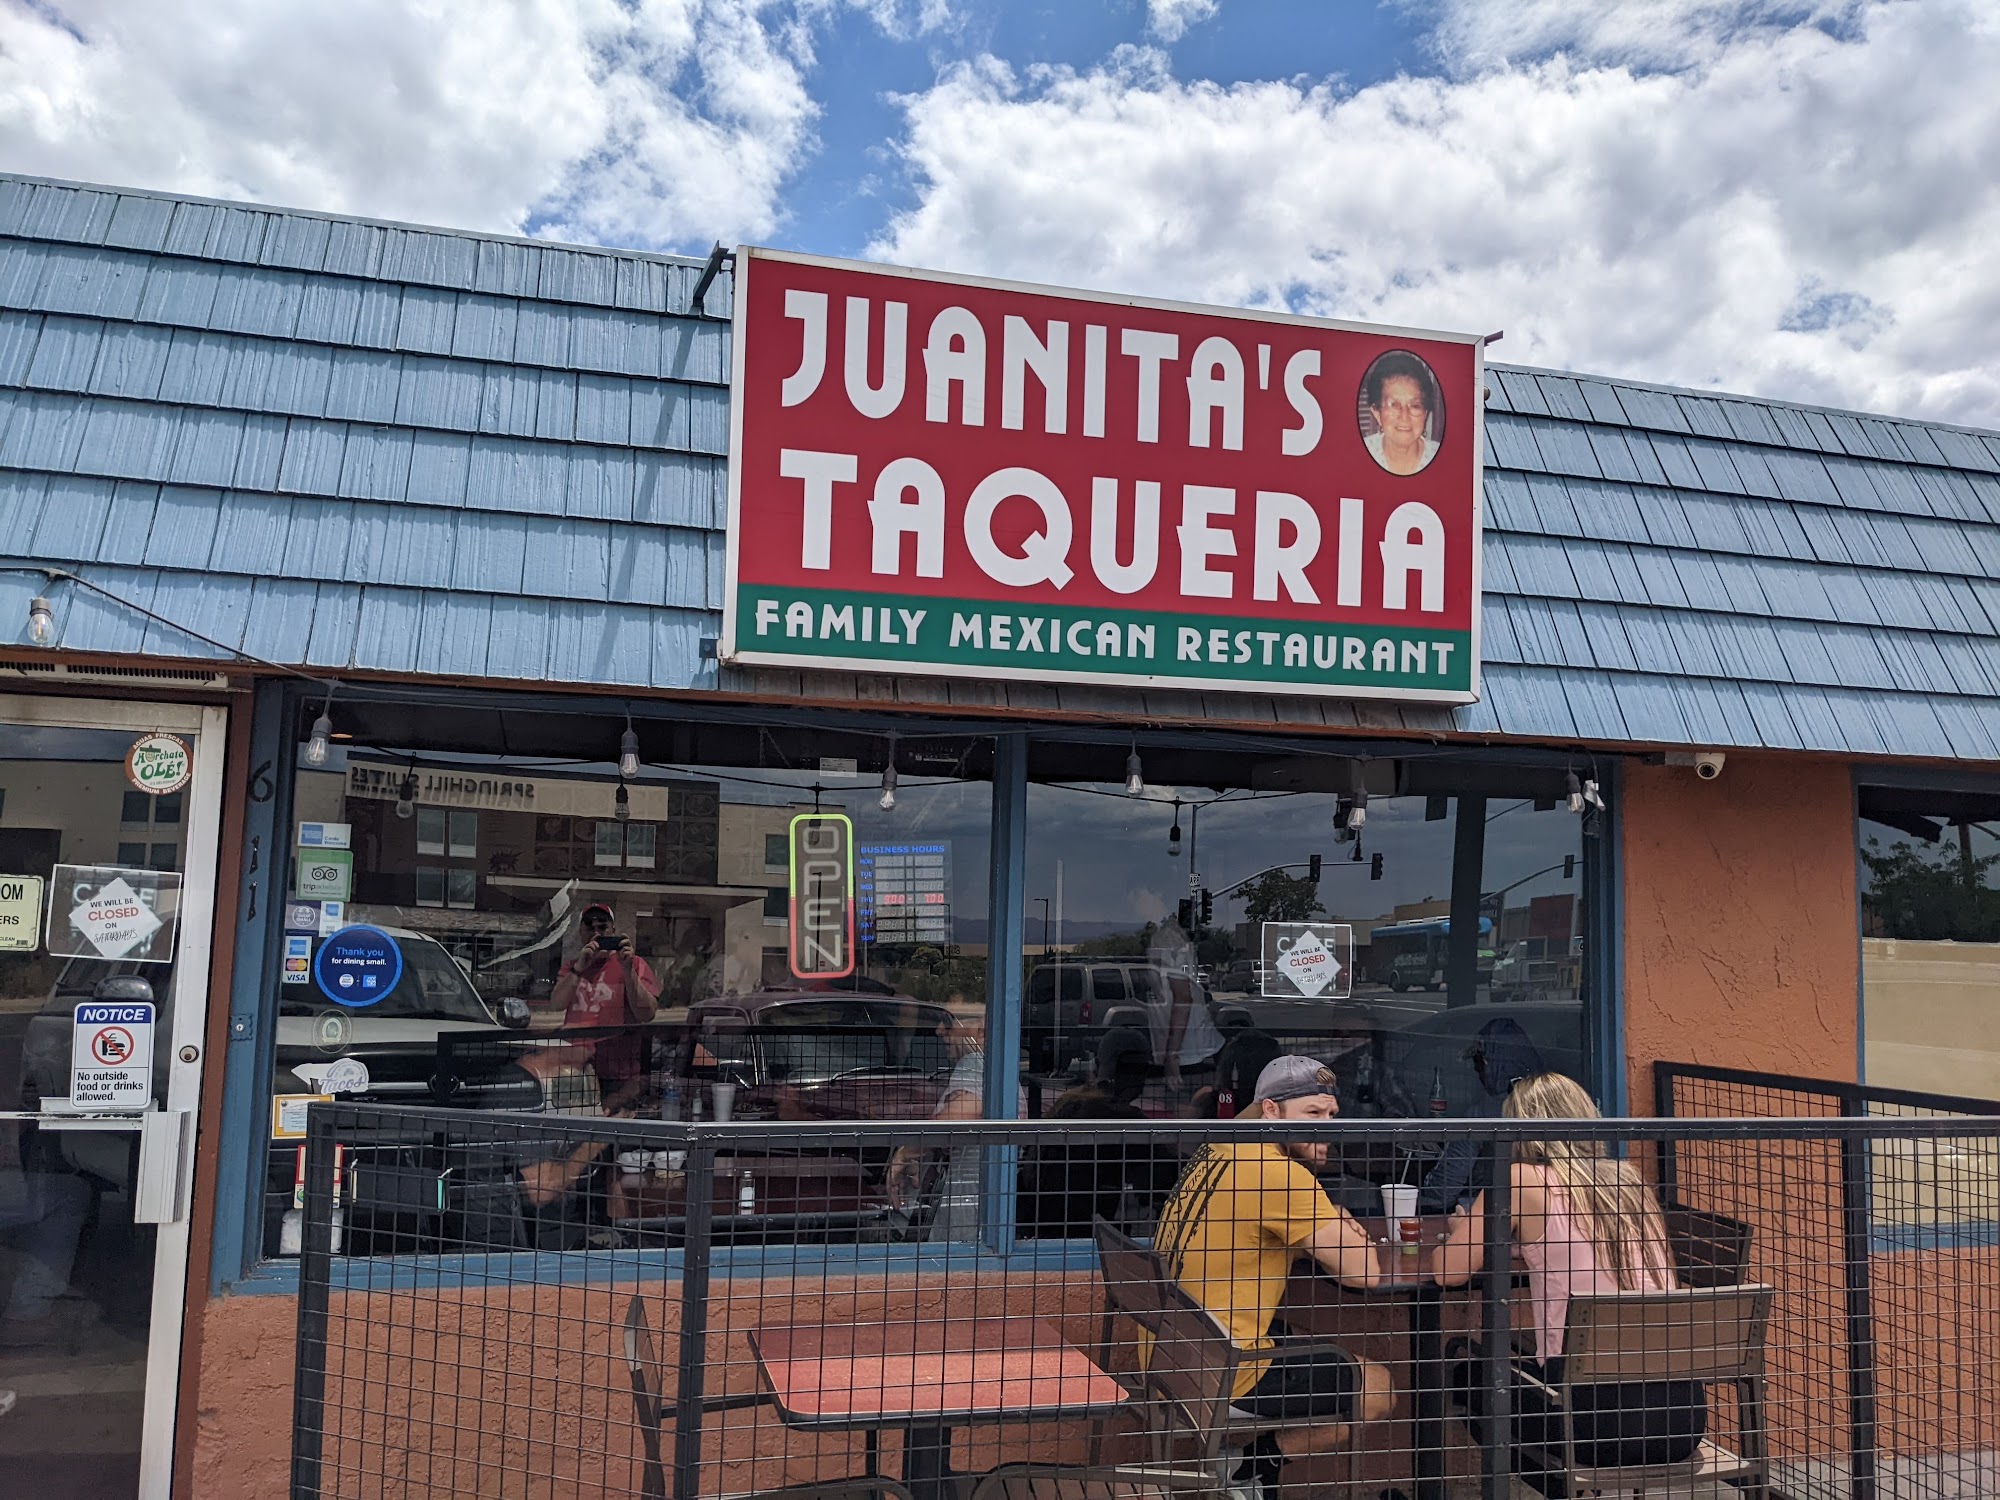 Juanita's Taqueria